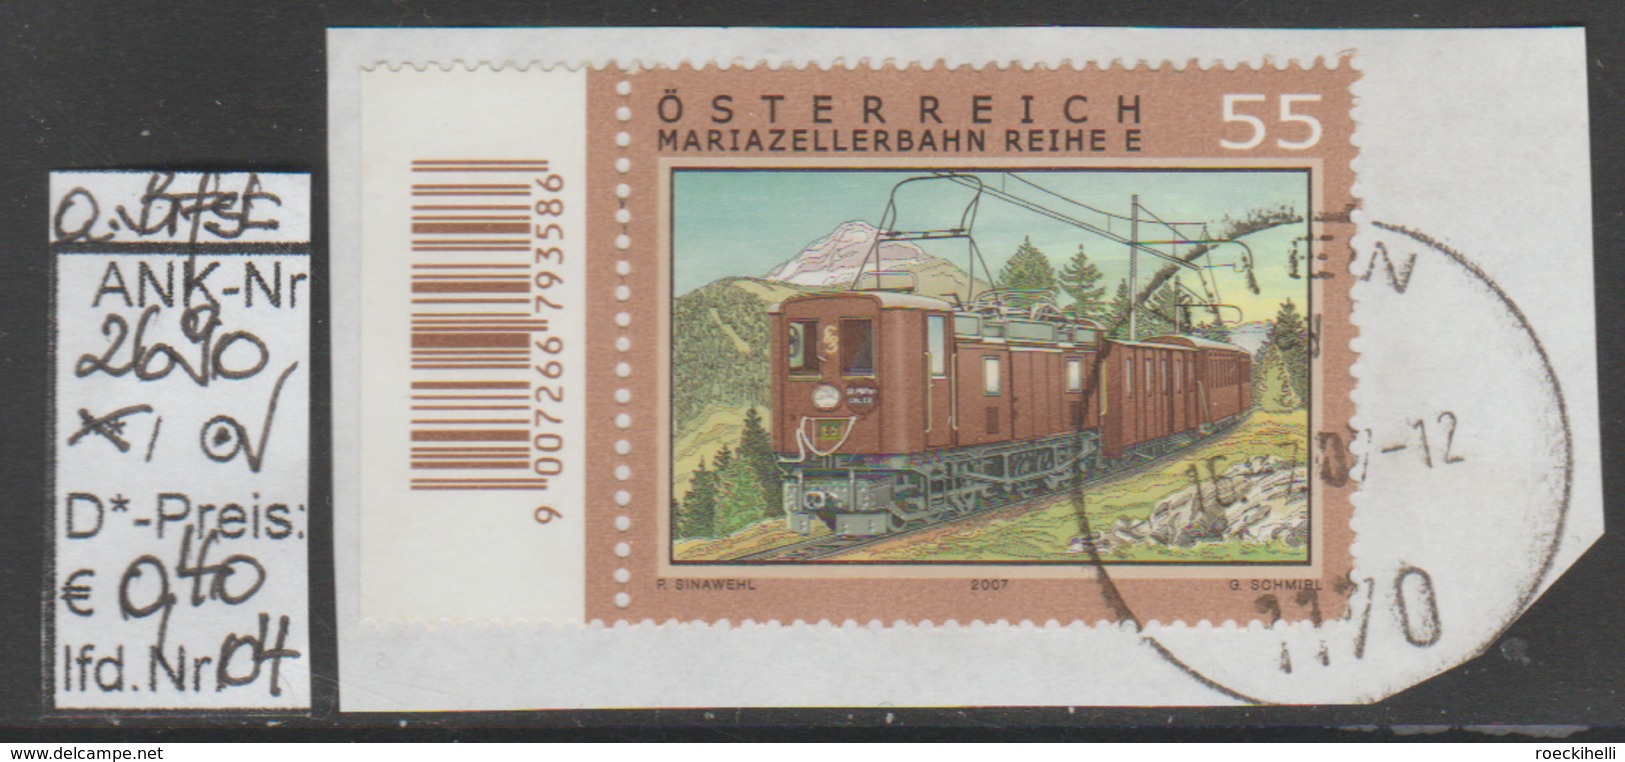 31.5.2007 - SM "Eisenbahnen-100 Jahre Mariazellerbahn" - O Gestempelt Auf Briefstücken - Siehe Scan (2690o 01-04 ABs) - Gebraucht